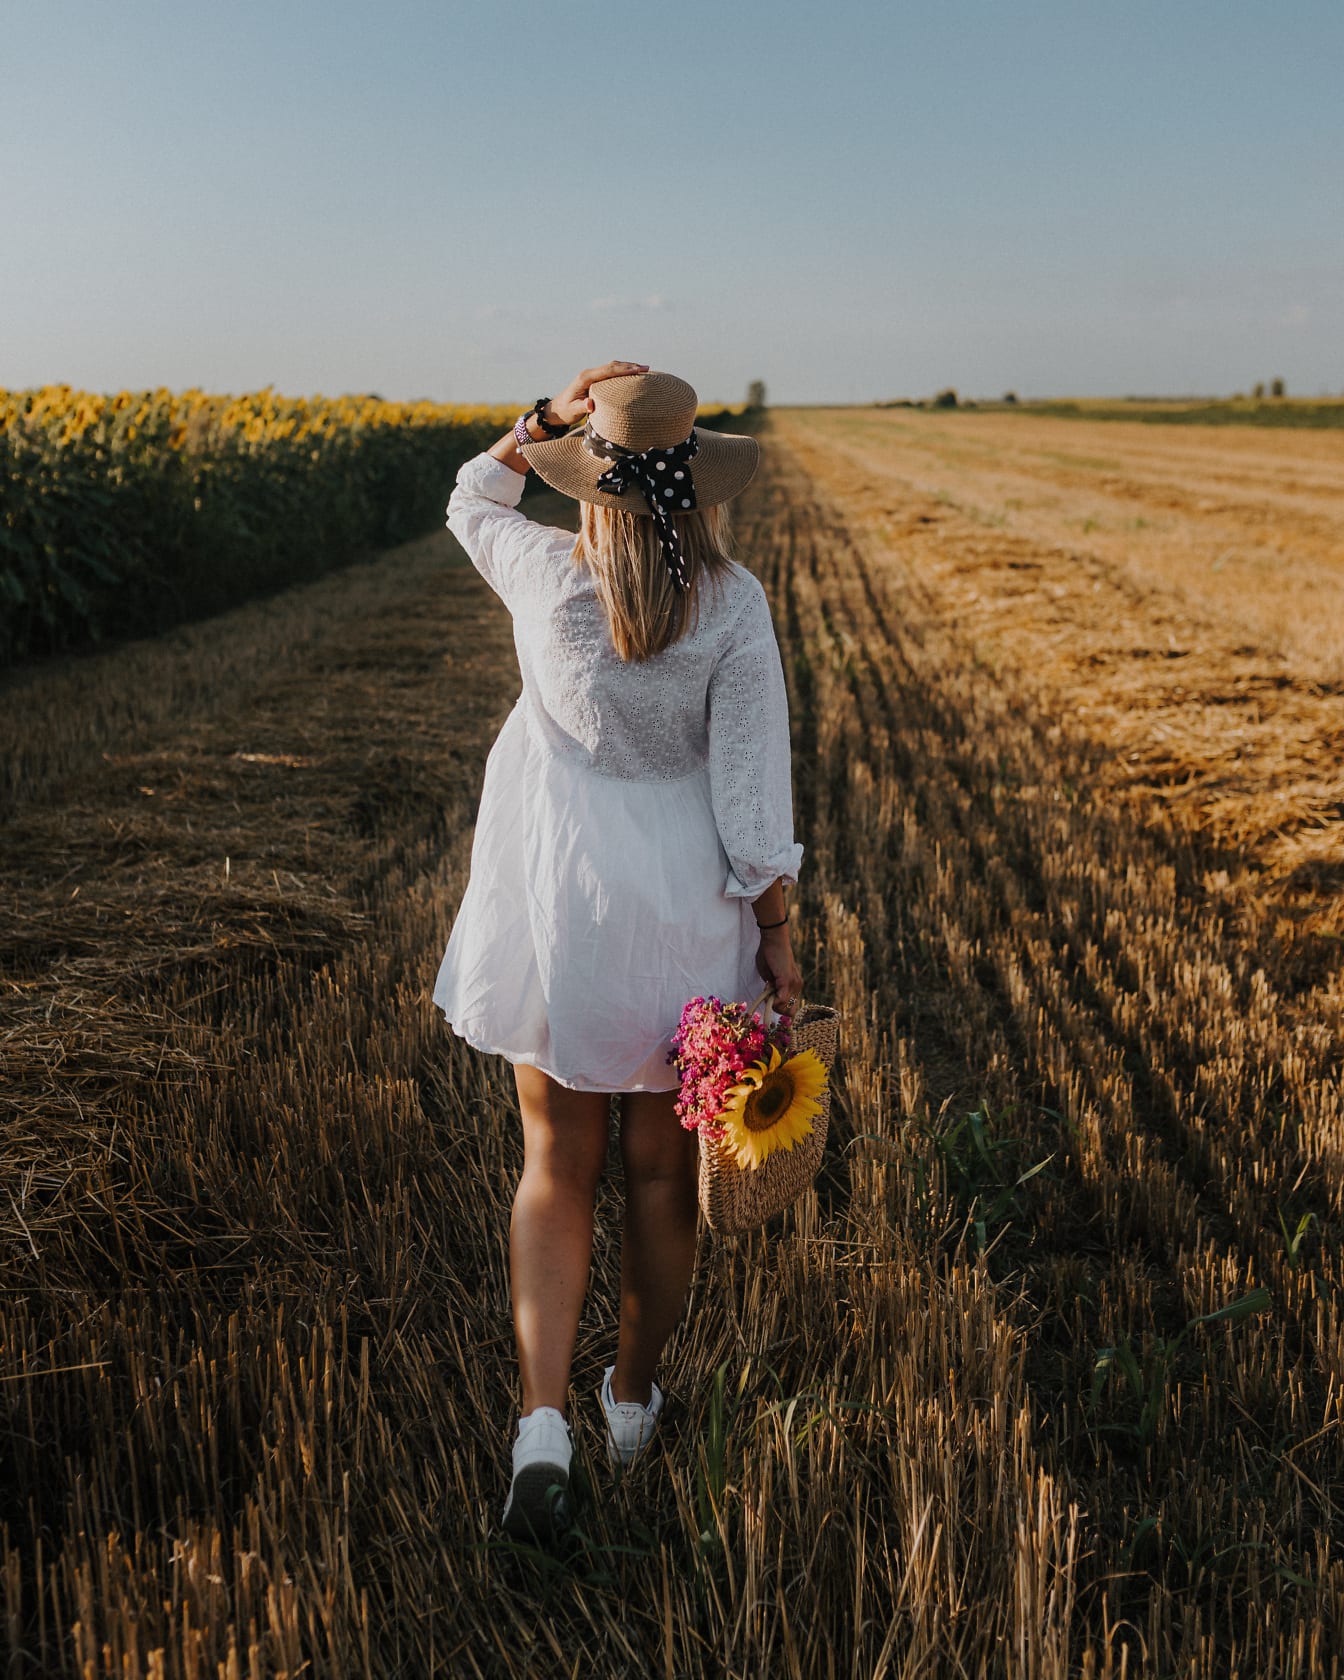 Người phụ nữ trẻ đi bộ trên cánh đồng lúa mì trong chiếc váy trắng và đội mũ rơm